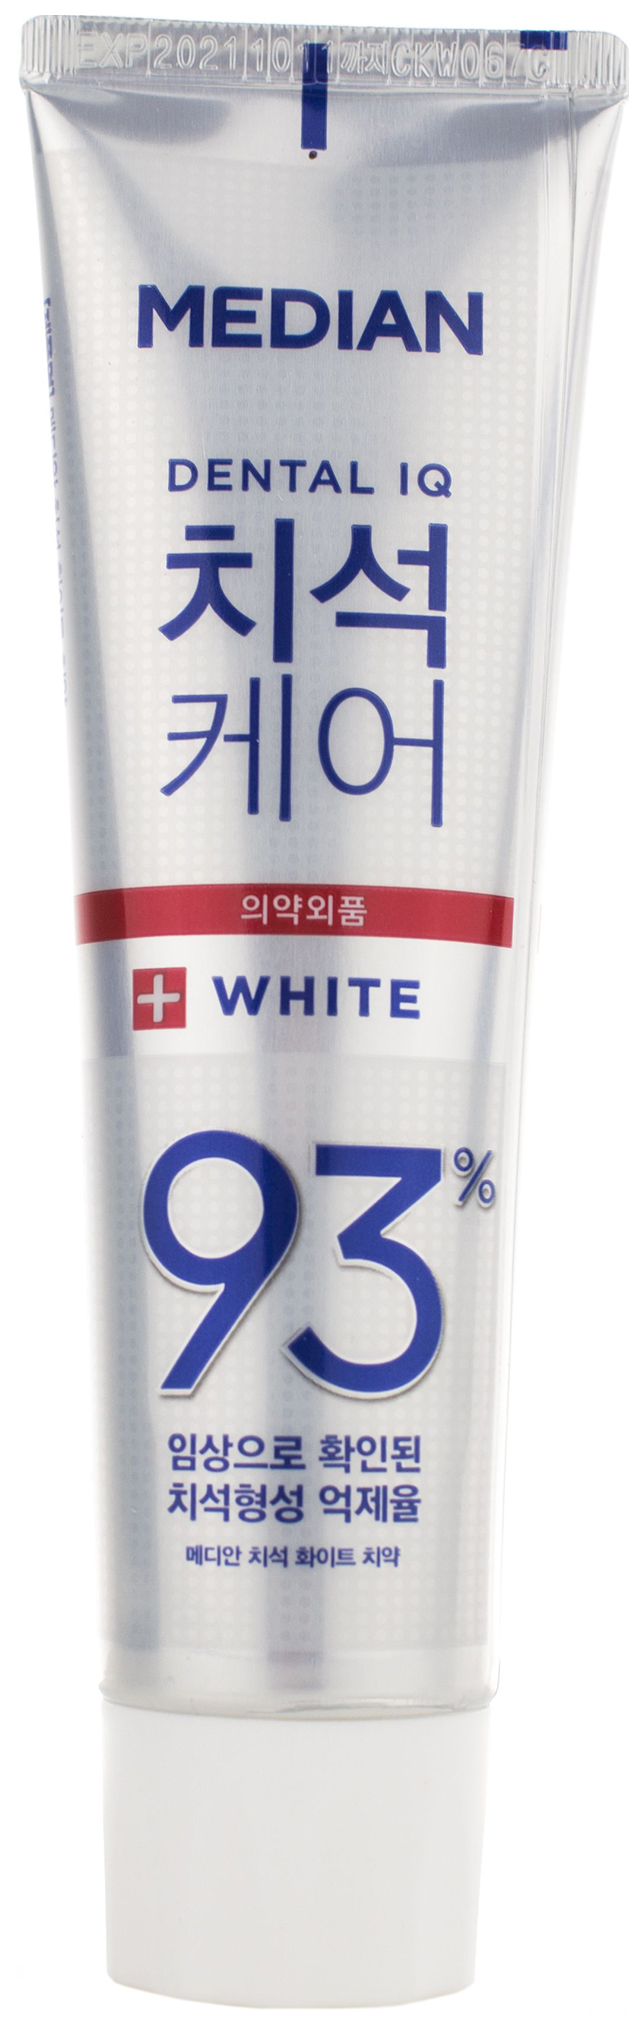 Зубная паста Median Toothpaste White 120 мл consly зубная паста гелевая отбеливающая urban gel toothpaste